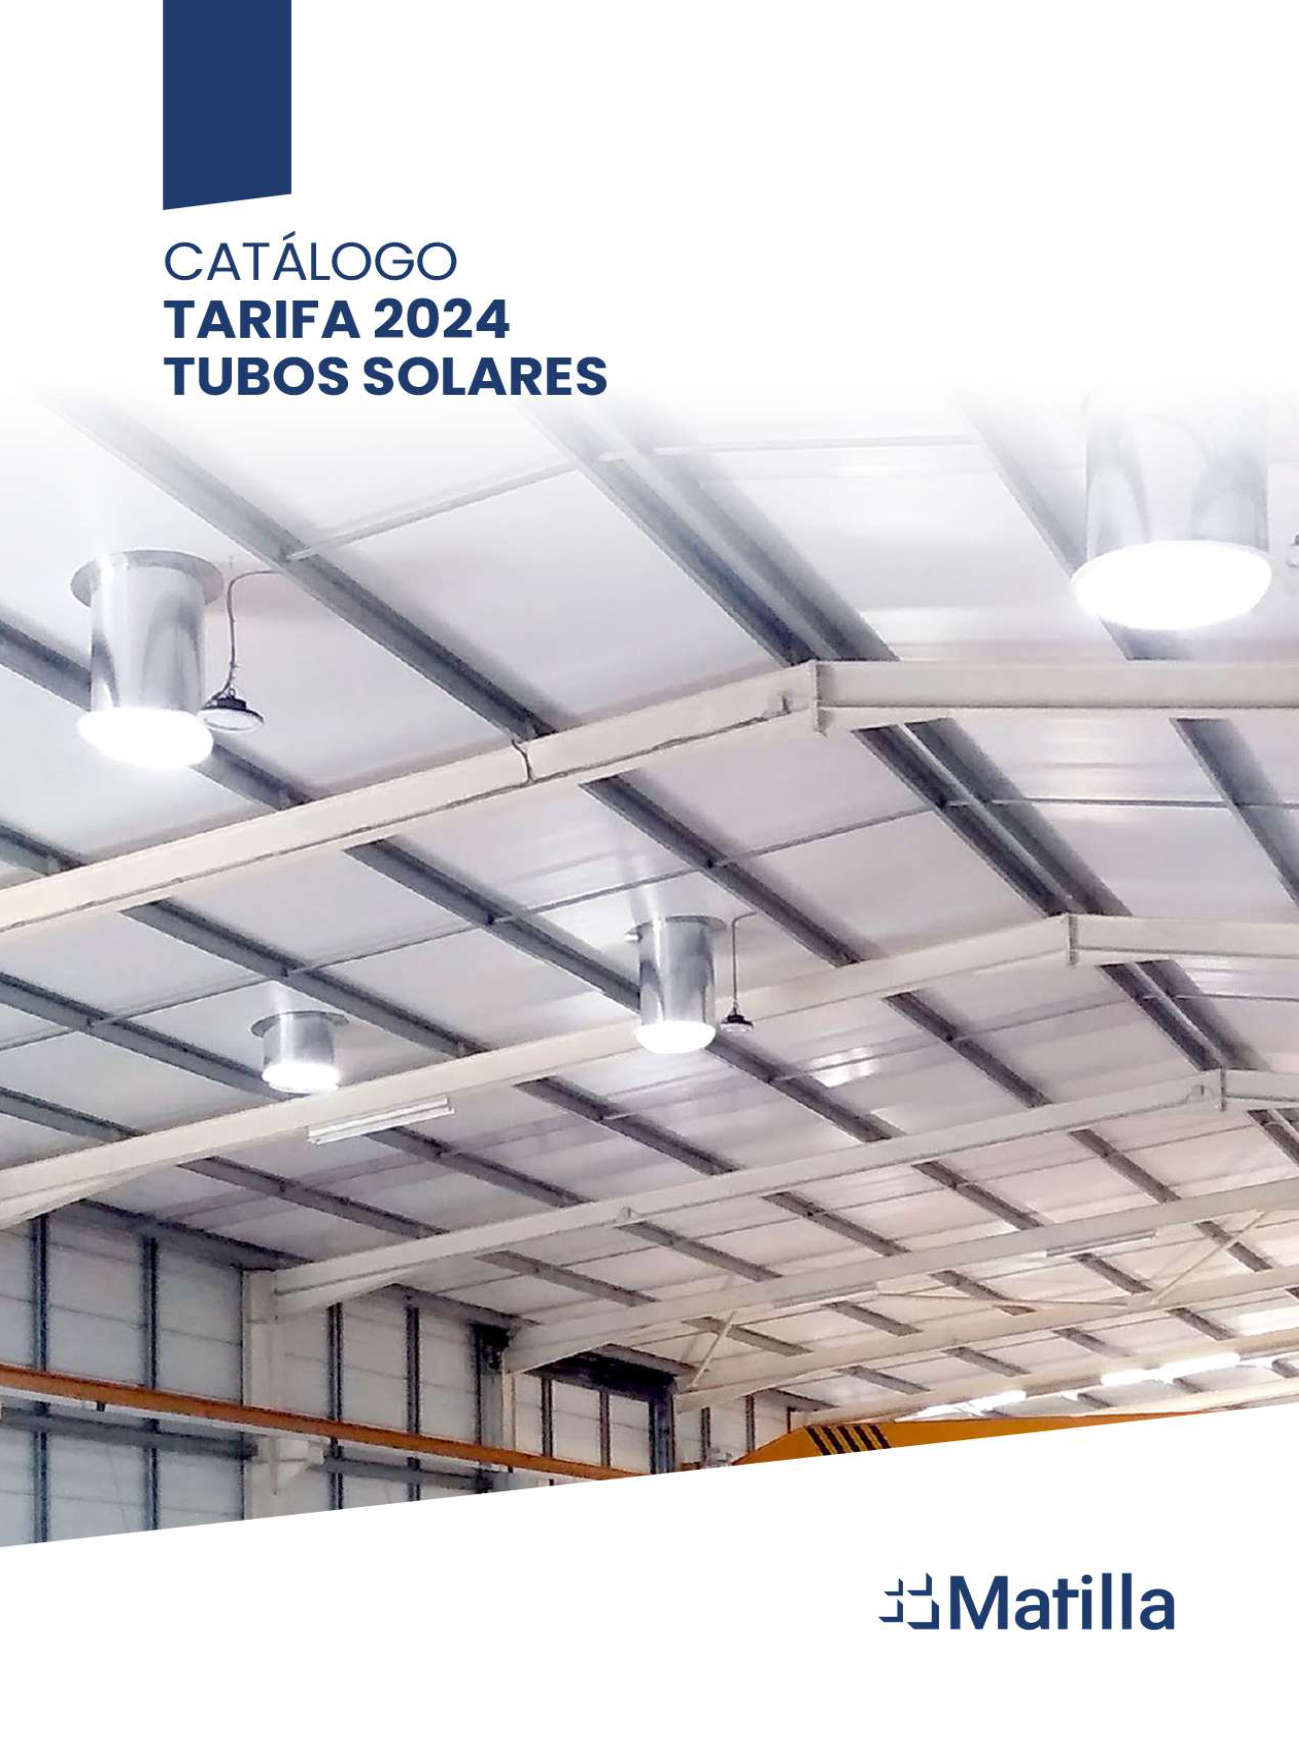 Catálogo de tarifas tubos solares 2024. Claraboyas Matilla